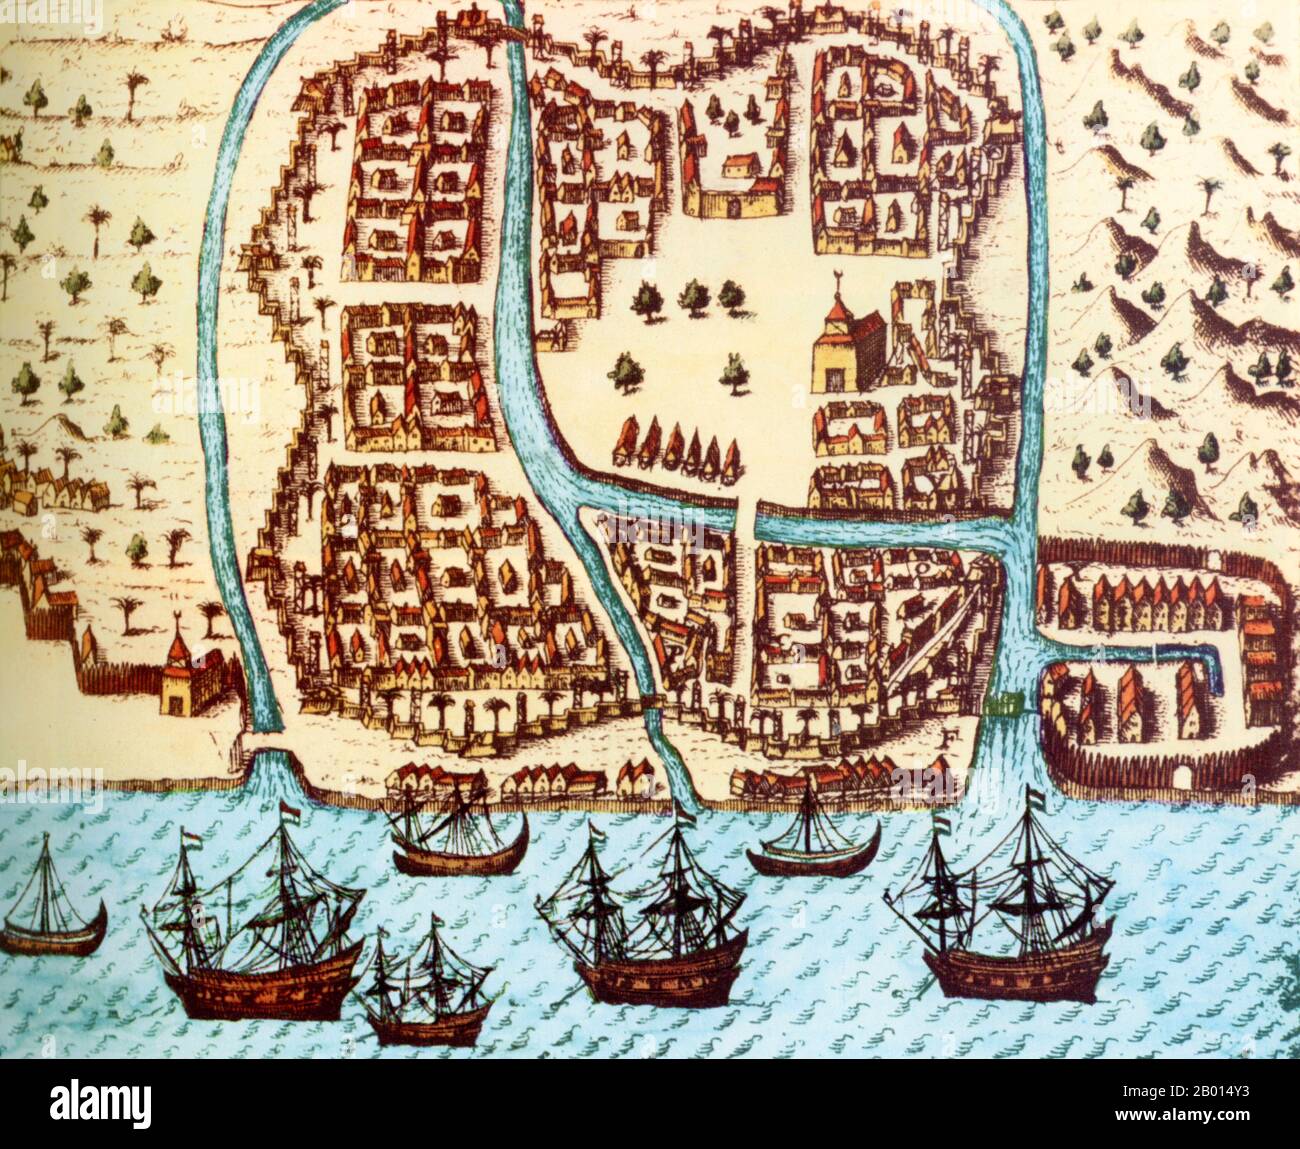 Indonésie: Une carte de Bantam sur la côte ouest de Java en 1596, année de l'arrivée de la première flotte hollandaise en vue d'établir un pied sur le commerce des épices. Gravure, c. 1597-1598. À la suite d'expéditions réussies vers les Indes orientales (Indonésie), les Hollandais ont installé une usine et une forteresse à Bantam, qui a ensuite été transférée dans la nouvelle capitale à Jakarta. La Dutch East India Company, ou VOC, a été établie en 1602 pour exploiter les Indes orientales et, en particulier, les Moluques ou les îles Spice, qui étaient le principal fournisseur mondial de muscade, de mace, de clous de girofle et de poivre. Banque D'Images